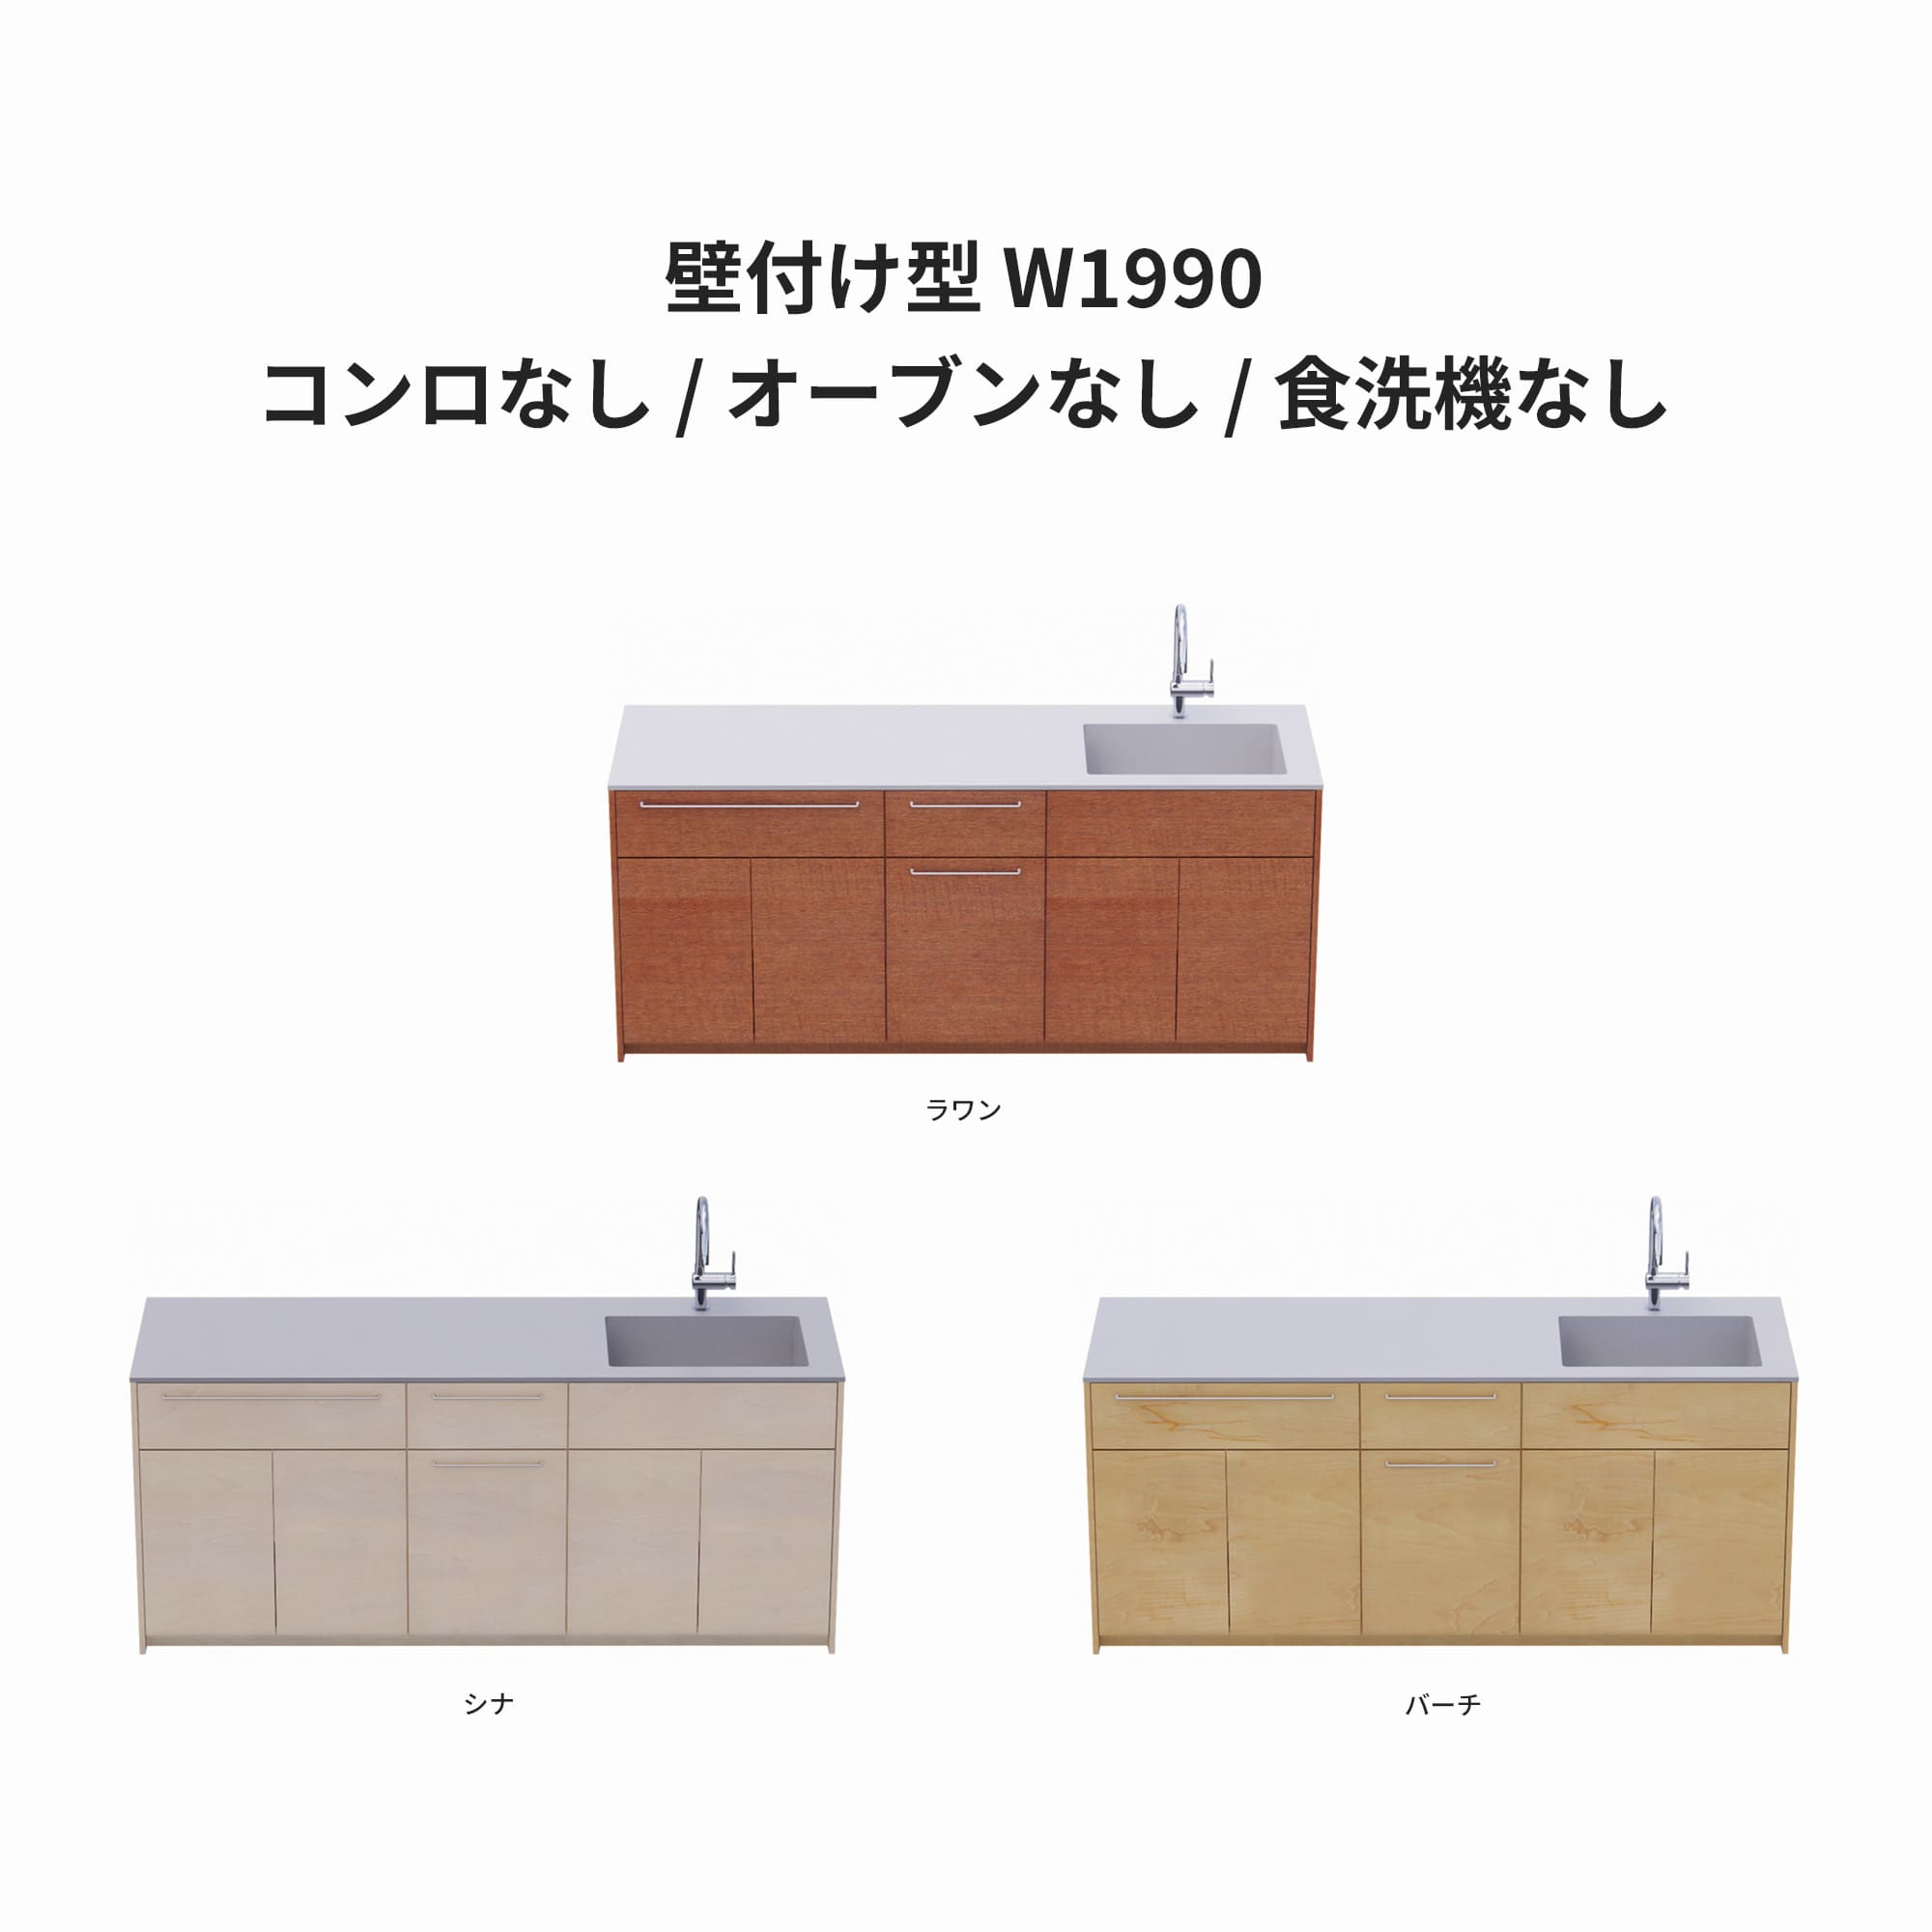 木製システムキッチン 壁付け型 W1990・コンロなし / オーブンなし / 食洗機なし KB-KC022-14-G183 ラワン・シナ・バーチが選択できます